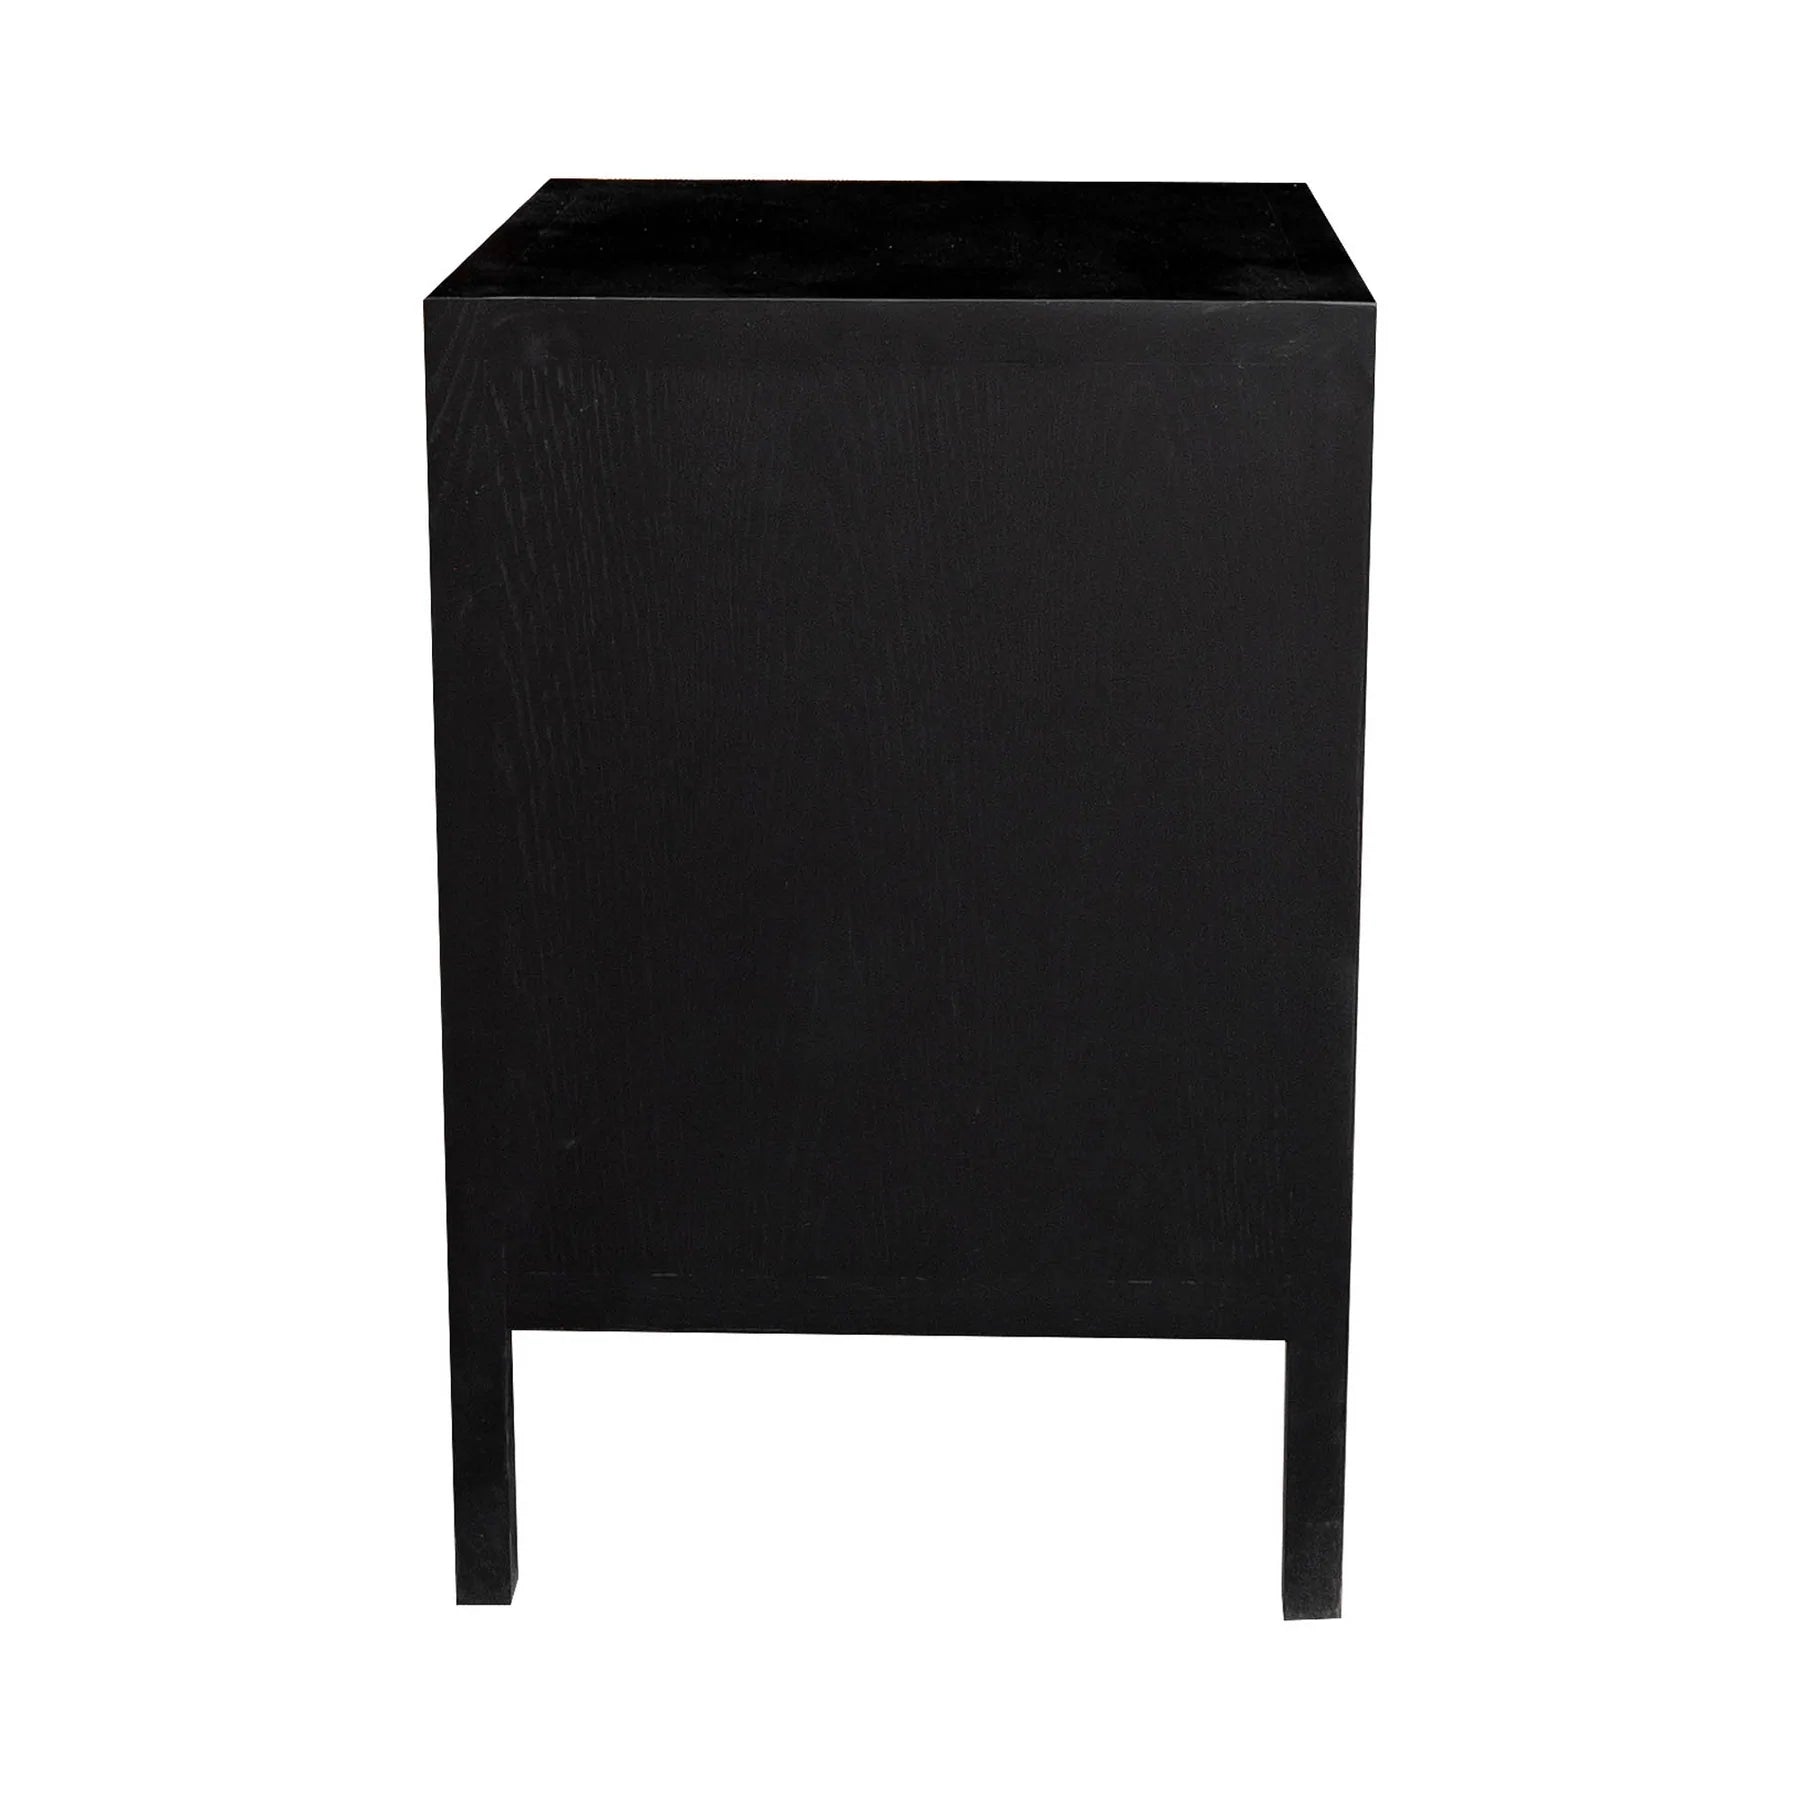 Rattan Filing Cabinet- Natural or Black